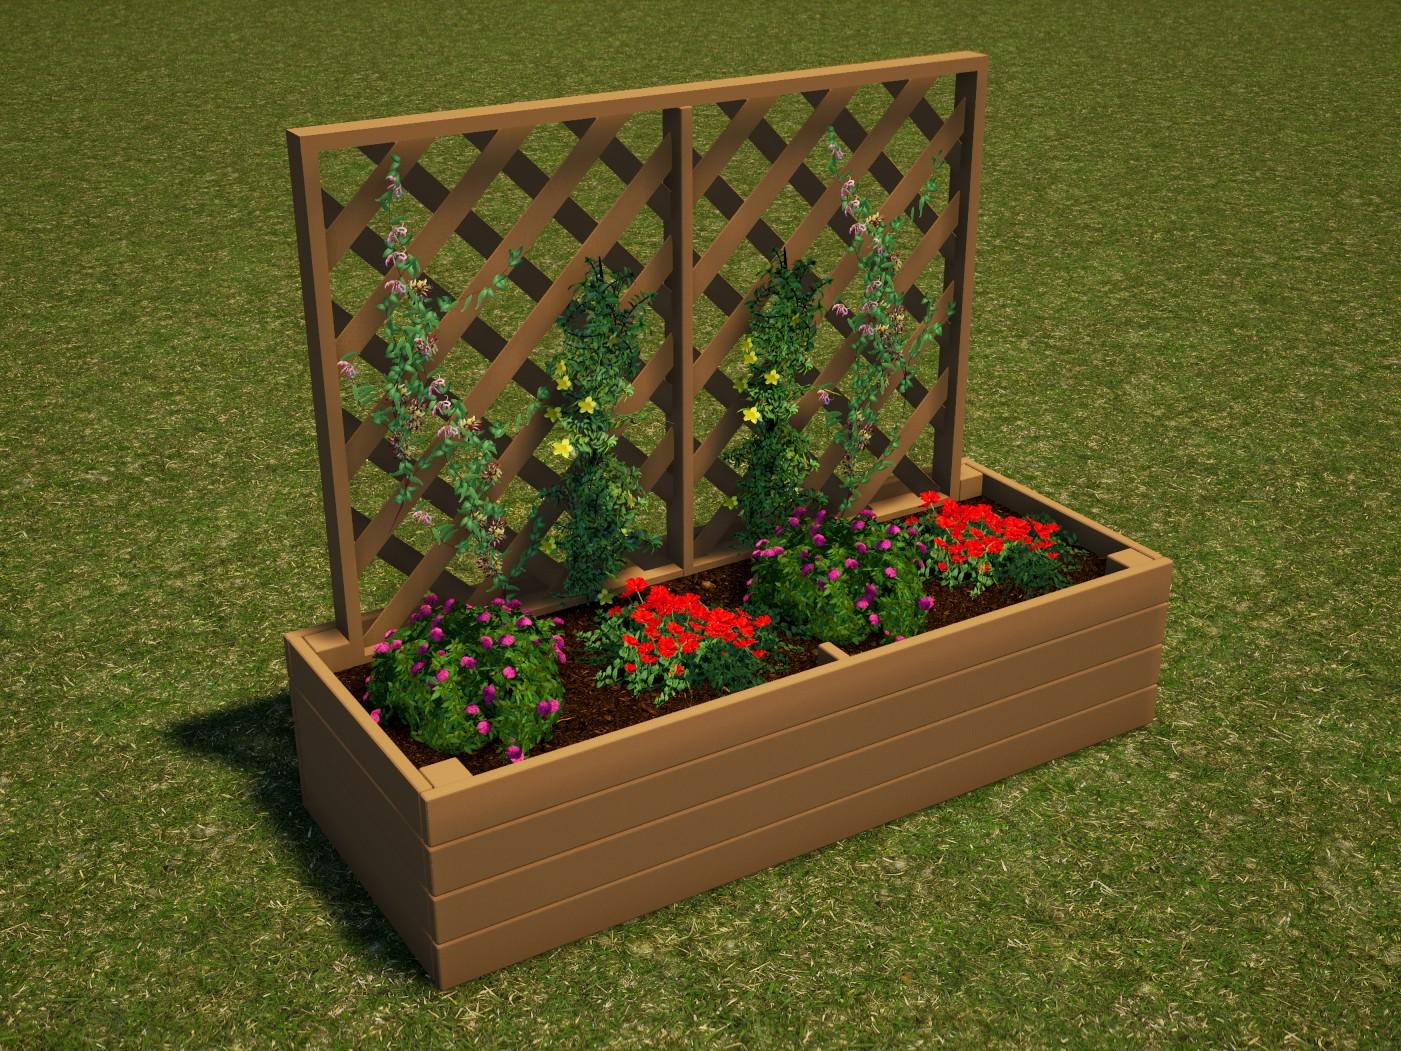 Outdoor Playground Garden Box